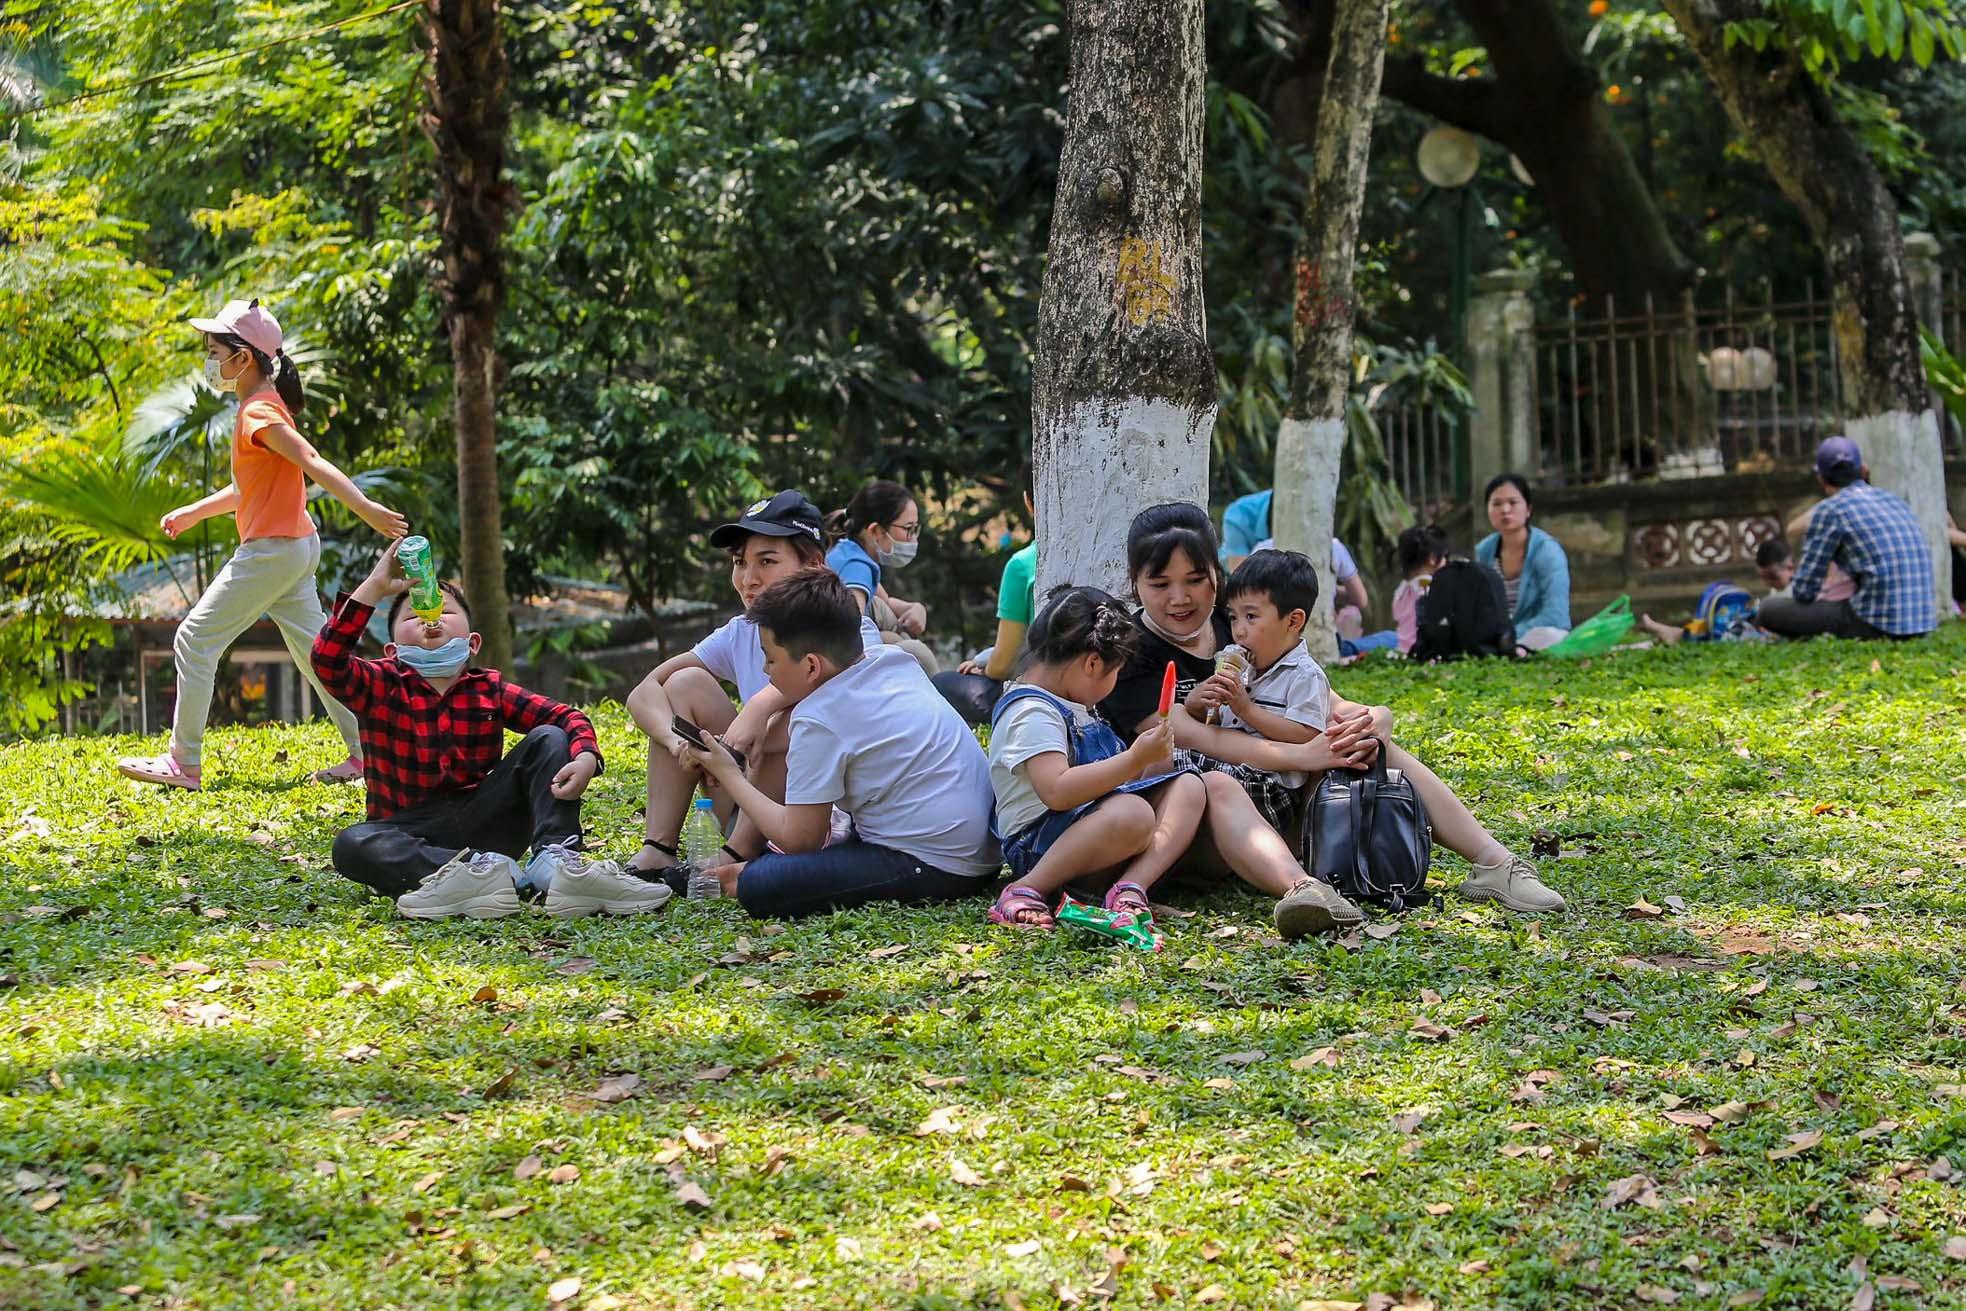 Ngàn người đổ về vườn thú Hà Nội trong ngày đầu nghỉ lễ - Ảnh 18.